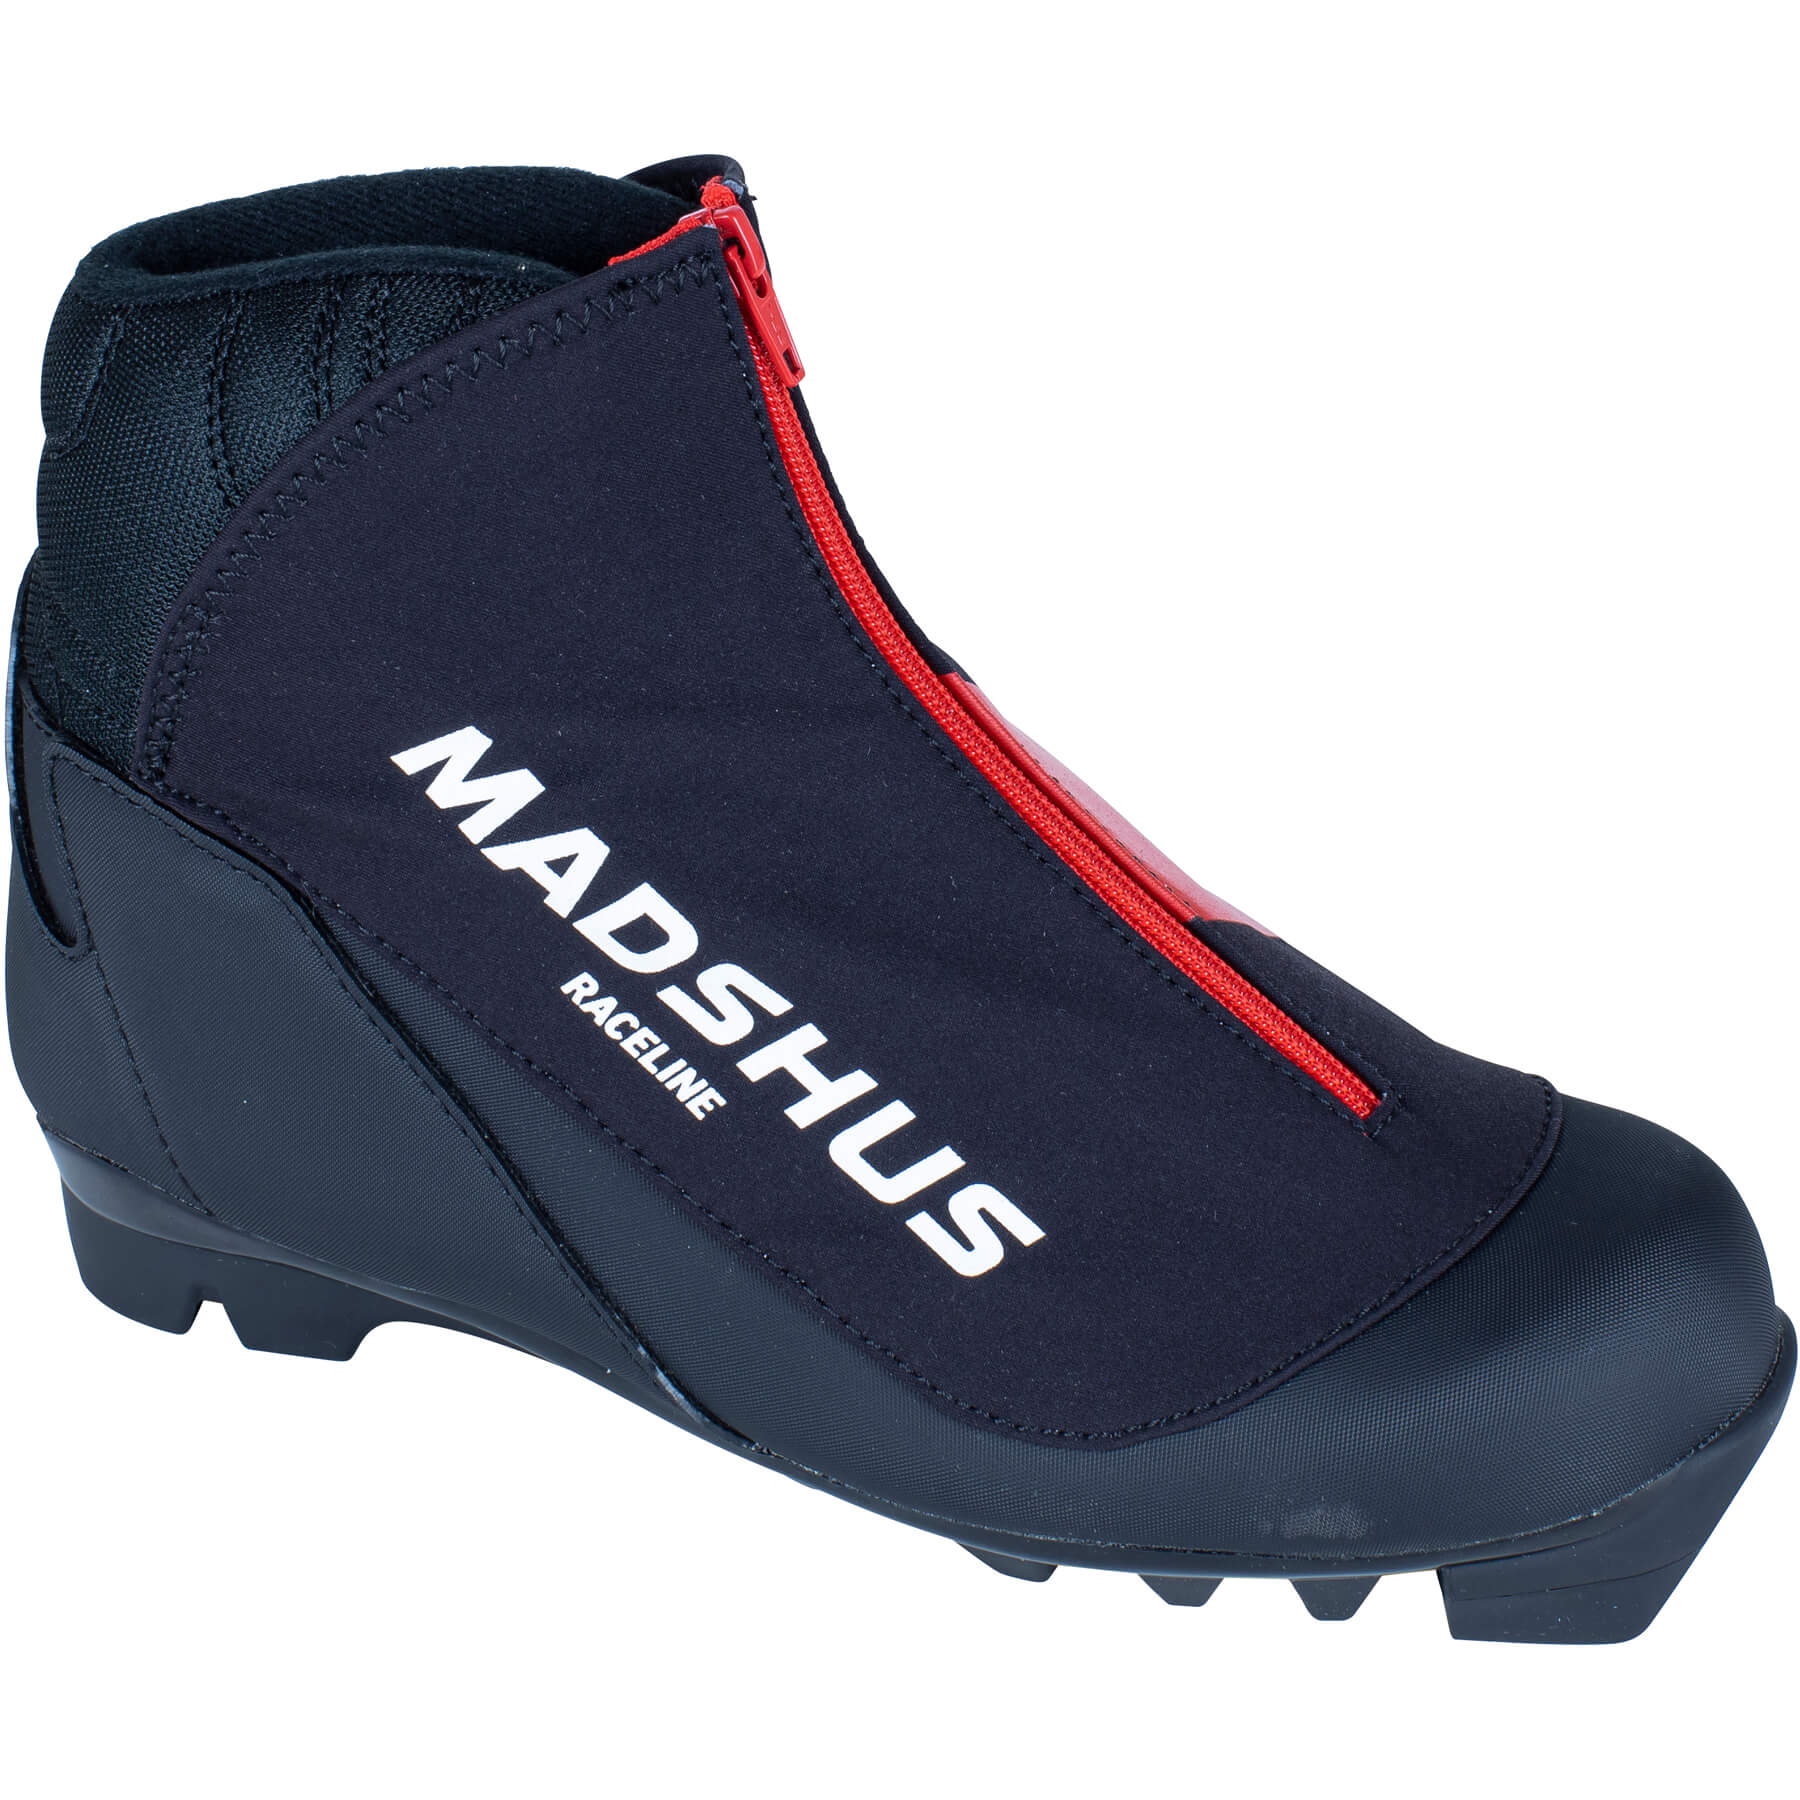 Madshus Raceline Jr Boot - 0